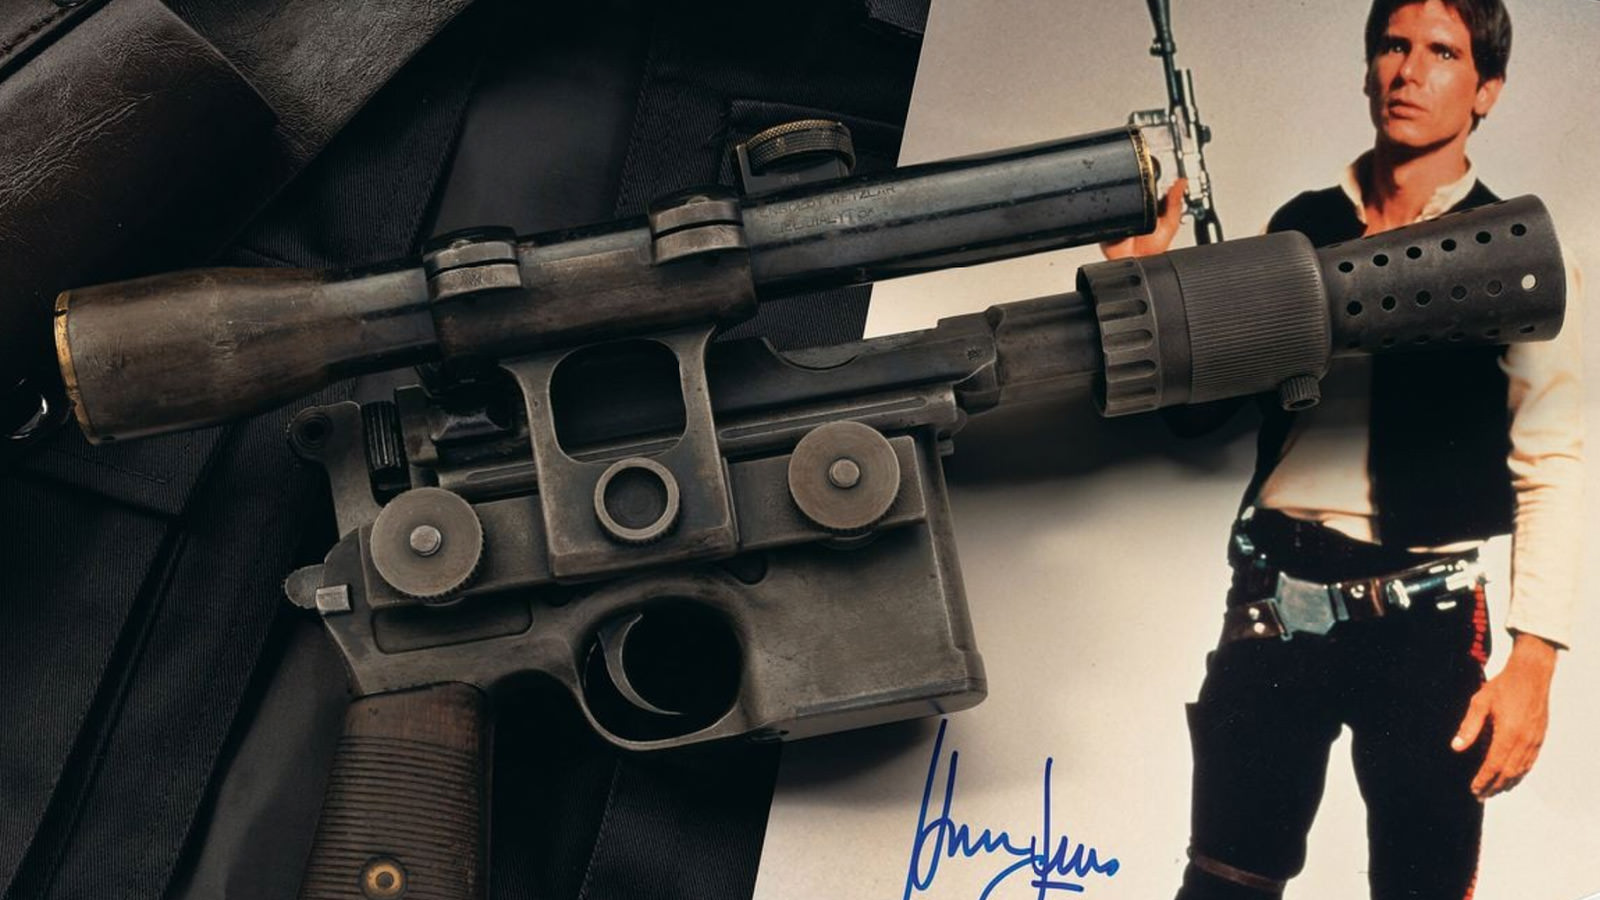 ‘Star Wars’ Han Solo DL-44 Heavy Blaster Pistol